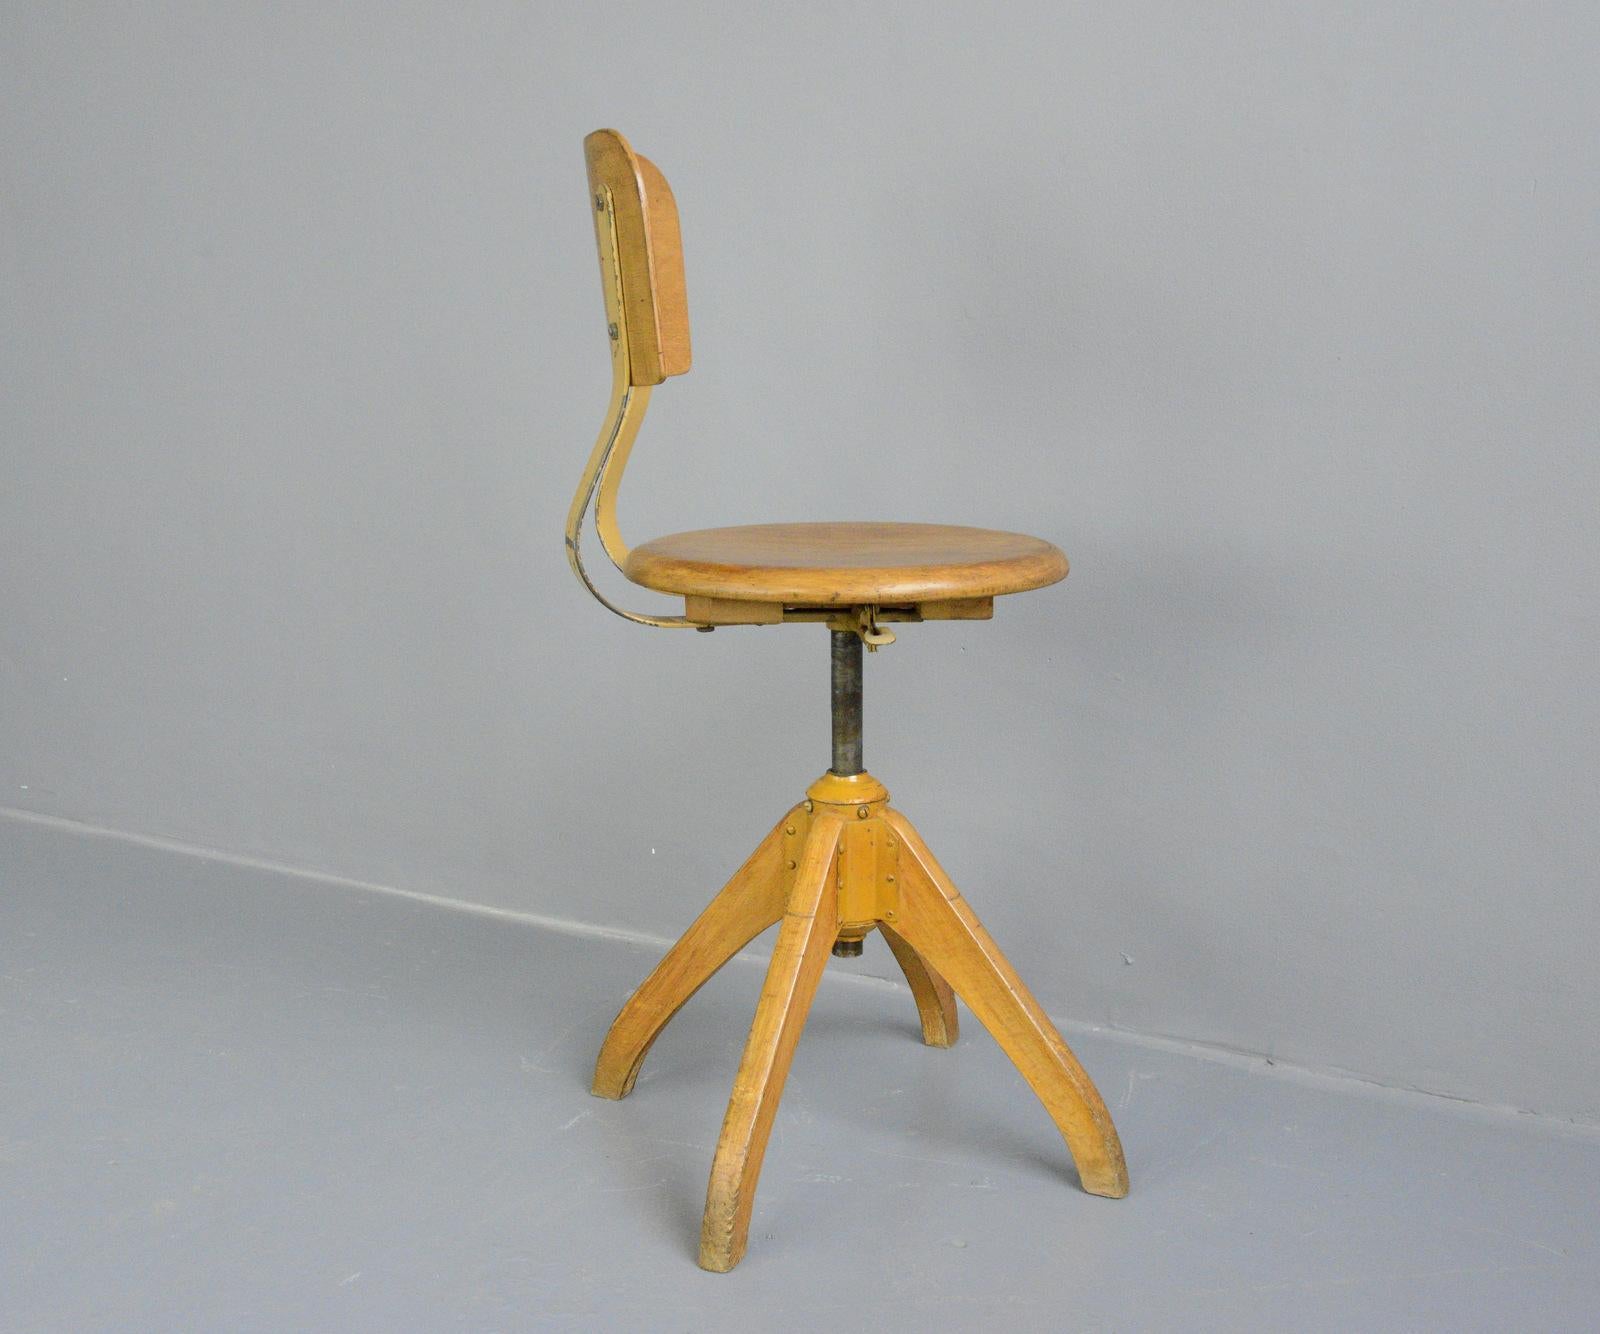 Beech Ama Elastik Factory Chair, circa 1930s